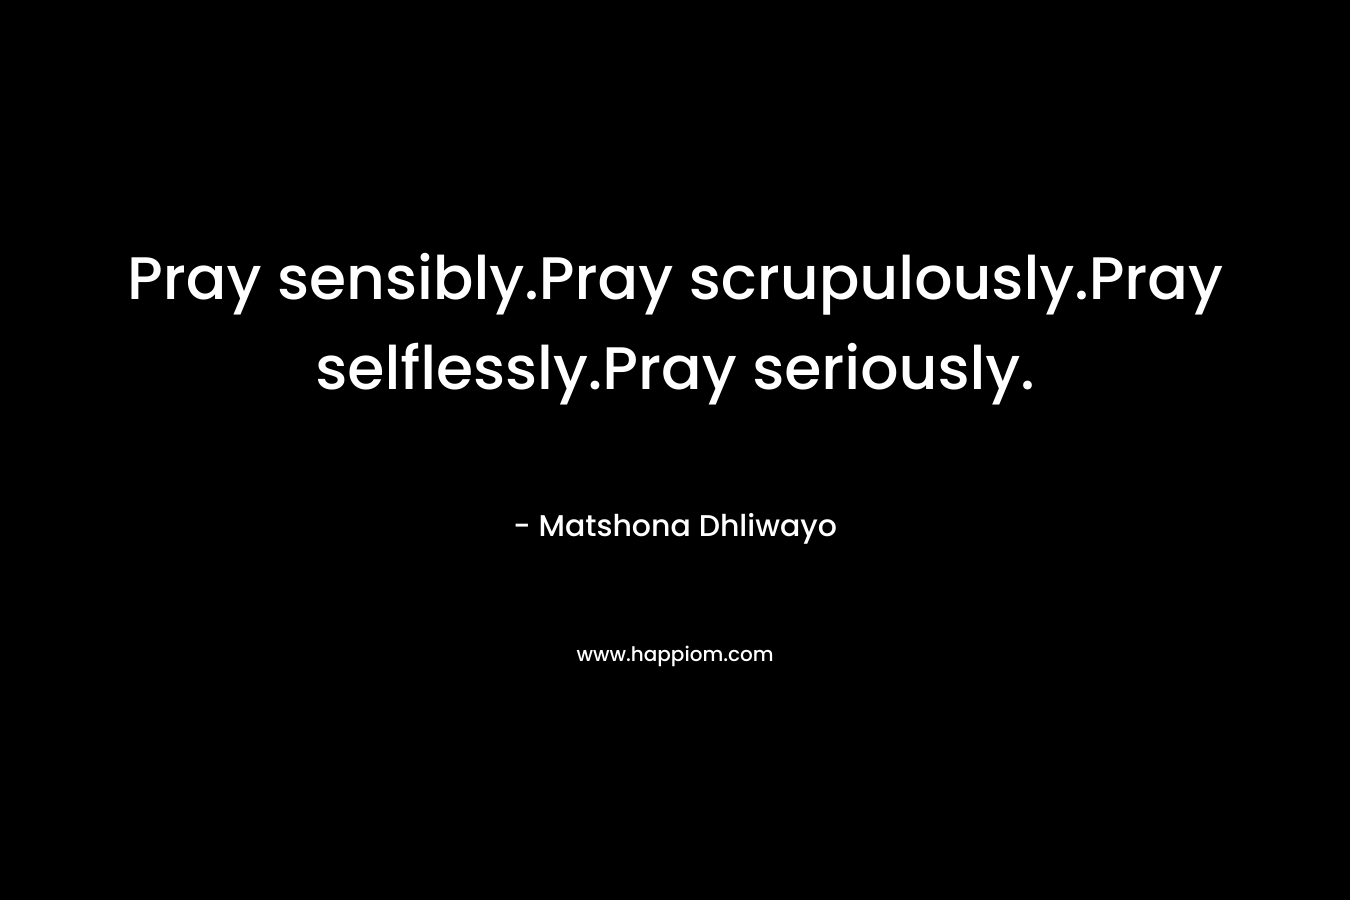 Pray sensibly.Pray scrupulously.Pray selflessly.Pray seriously.